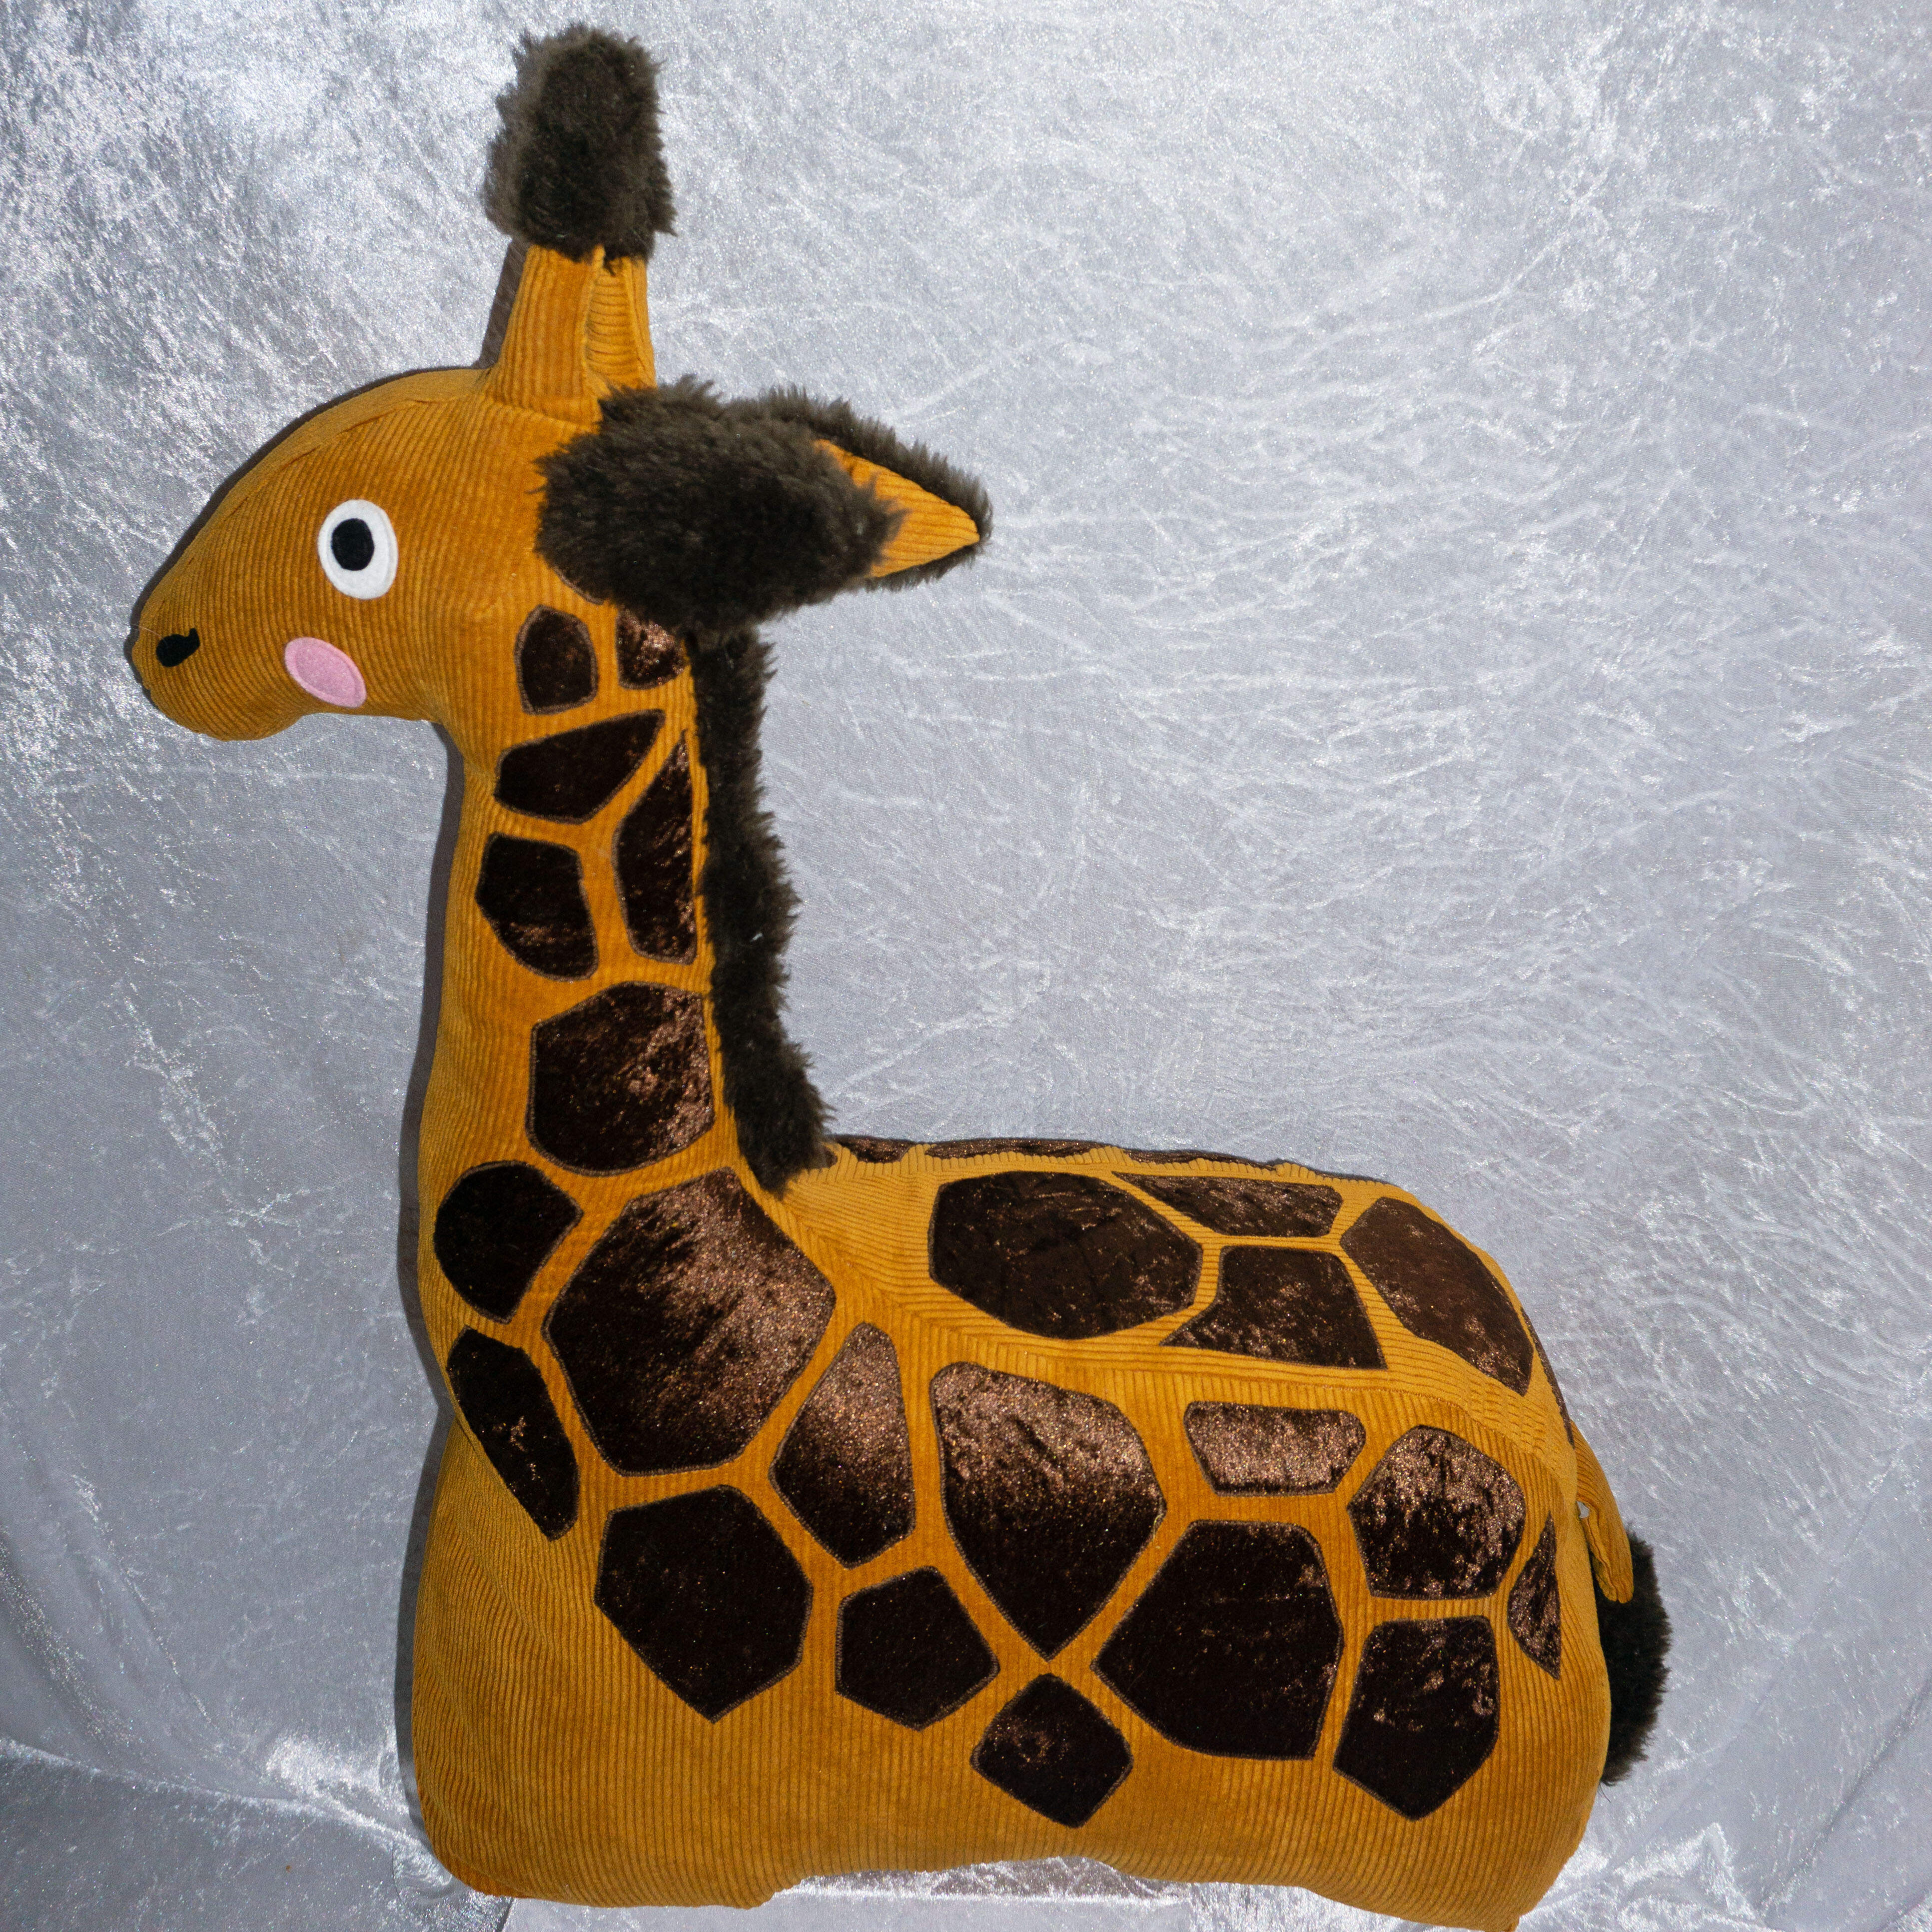 Reittier Giraffe Gisela